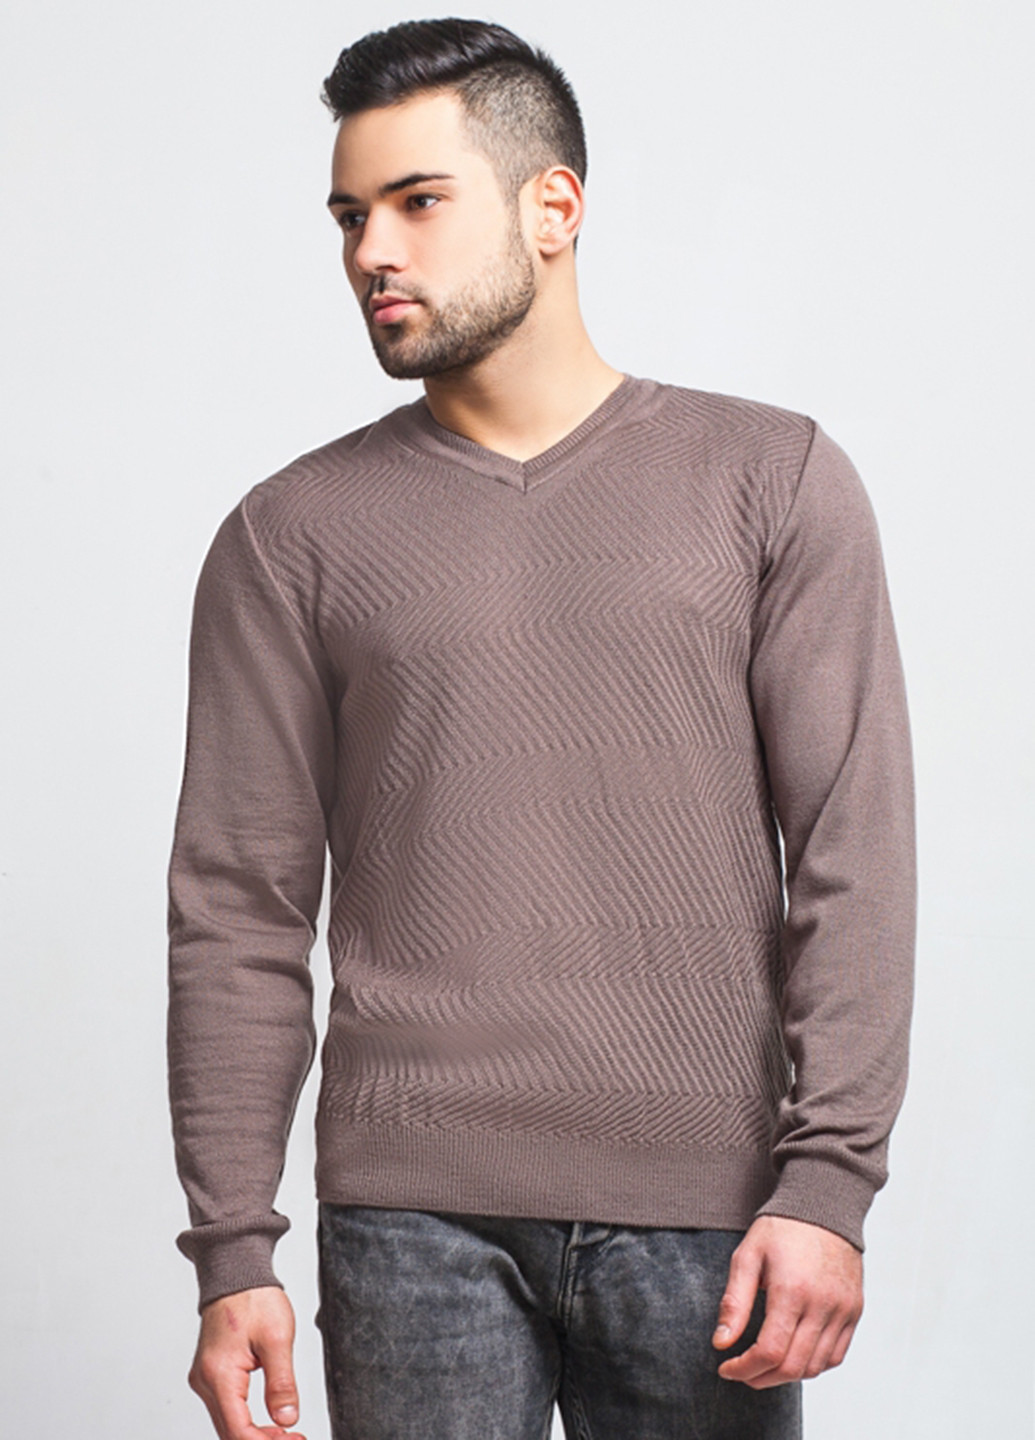 Коричневый демисезонный пуловер пуловер SVTR